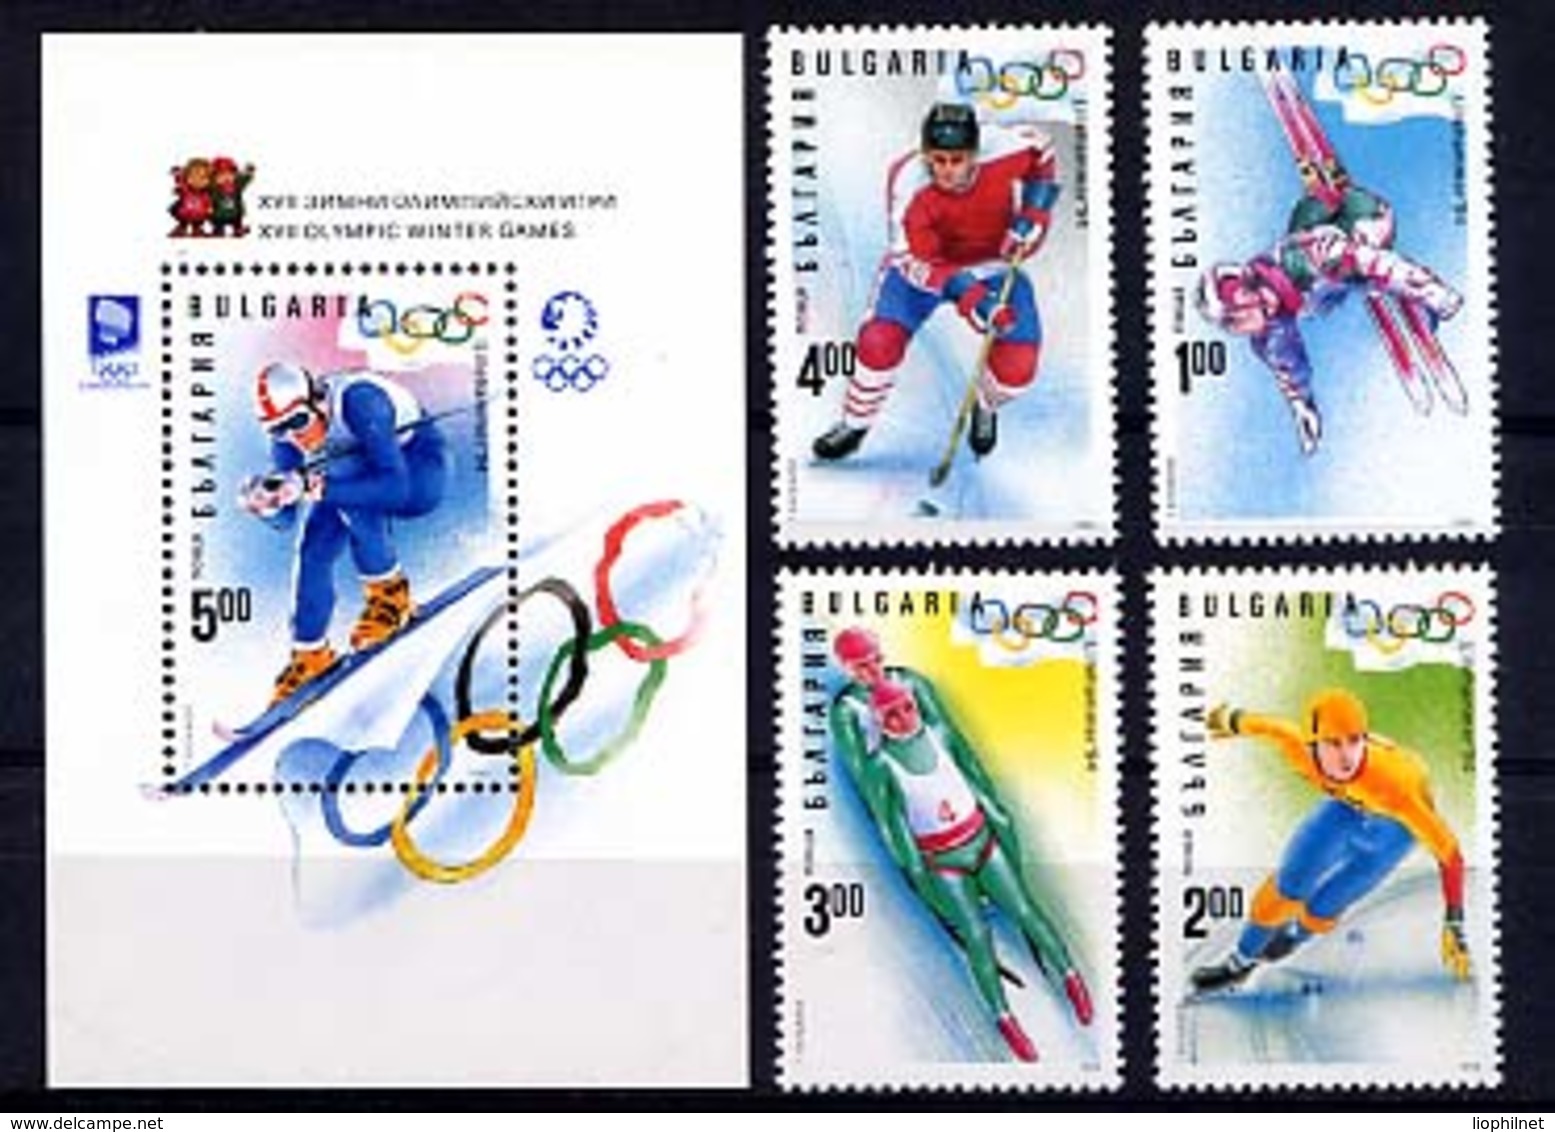 BULGARIE 1994, Lillehammer, Epreuves De Ski, 4 Valeurs + 1 Bloc, Neufs / Mint. R1117 - Winter 1994: Lillehammer